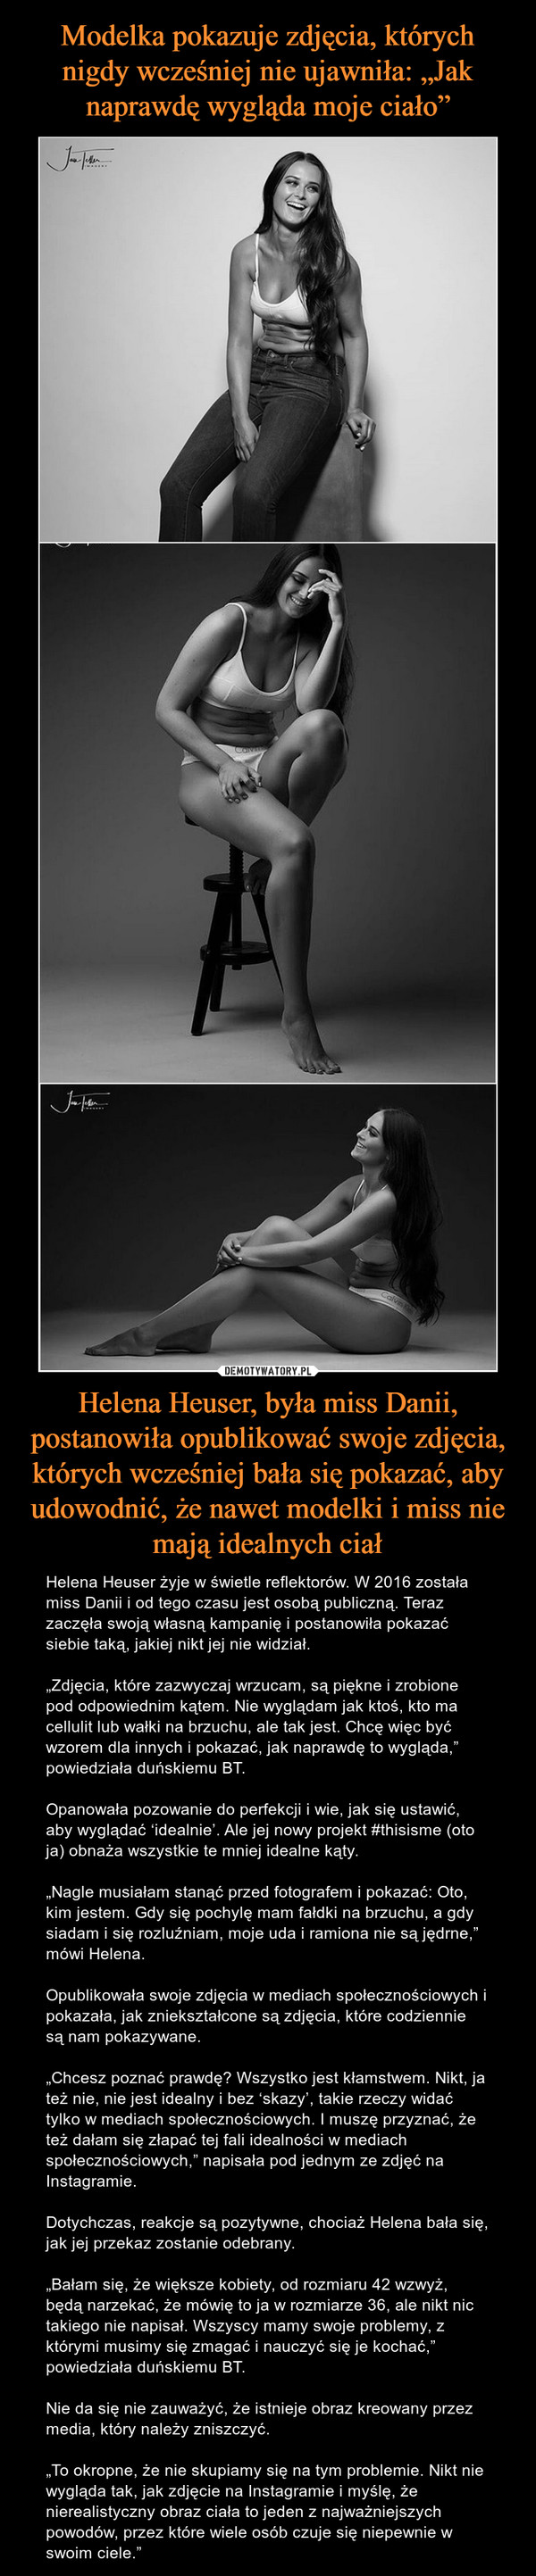 Helena Heuser, była miss Danii, postanowiła opublikować swoje zdjęcia, których wcześniej bała się pokazać, aby udowodnić, że nawet modelki i miss nie mają idealnych ciał – Helena Heuser żyje w świetle reflektorów. W 2016 została miss Danii i od tego czasu jest osobą publiczną. Teraz zaczęła swoją własną kampanię i postanowiła pokazać siebie taką, jakiej nikt jej nie widział.„Zdjęcia, które zazwyczaj wrzucam, są piękne i zrobione pod odpowiednim kątem. Nie wyglądam jak ktoś, kto ma cellulit lub wałki na brzuchu, ale tak jest. Chcę więc być wzorem dla innych i pokazać, jak naprawdę to wygląda,” powiedziała duńskiemu BT.Opanowała pozowanie do perfekcji i wie, jak się ustawić, aby wyglądać ‘idealnie’. Ale jej nowy projekt #thisisme (oto ja) obnaża wszystkie te mniej idealne kąty.„Nagle musiałam stanąć przed fotografem i pokazać: Oto, kim jestem. Gdy się pochylę mam fałdki na brzuchu, a gdy siadam i się rozluźniam, moje uda i ramiona nie są jędrne,” mówi Helena. Opublikowała swoje zdjęcia w mediach społecznościowych i pokazała, jak zniekształcone są zdjęcia, które codziennie są nam pokazywane.„Chcesz poznać prawdę? Wszystko jest kłamstwem. Nikt, ja też nie, nie jest idealny i bez ‘skazy’, takie rzeczy widać tylko w mediach społecznościowych. I muszę przyznać, że też dałam się złapać tej fali idealności w mediach społecznościowych,” napisała pod jednym ze zdjęć na Instagramie.Dotychczas, reakcje są pozytywne, chociaż Helena bała się, jak jej przekaz zostanie odebrany.„Bałam się, że większe kobiety, od rozmiaru 42 wzwyż, będą narzekać, że mówię to ja w rozmiarze 36, ale nikt nic takiego nie napisał. Wszyscy mamy swoje problemy, z którymi musimy się zmagać i nauczyć się je kochać,” powiedziała duńskiemu BT.Nie da się nie zauważyć, że istnieje obraz kreowany przez media, który należy zniszczyć.„To okropne, że nie skupiamy się na tym problemie. Nikt nie wygląda tak, jak zdjęcie na Instagramie i myślę, że nierealistyczny obraz ciała to jeden z najważniejszych powodów, przez które wiele osób czuje się niepewnie w swoim ciele.” 